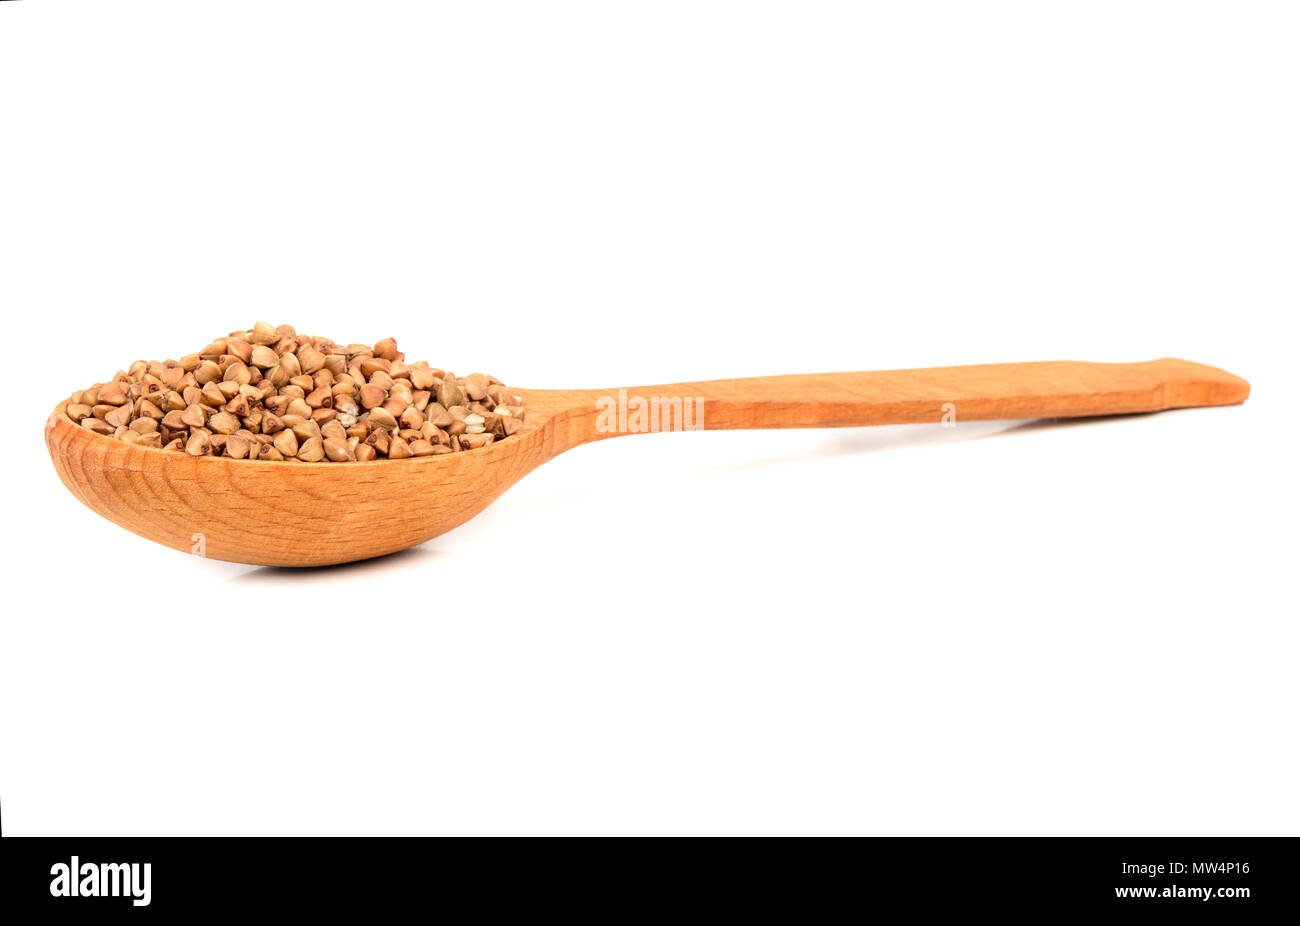 Materie del grano saraceno in cucchiaio di legno su sfondo bianco Foto Stock